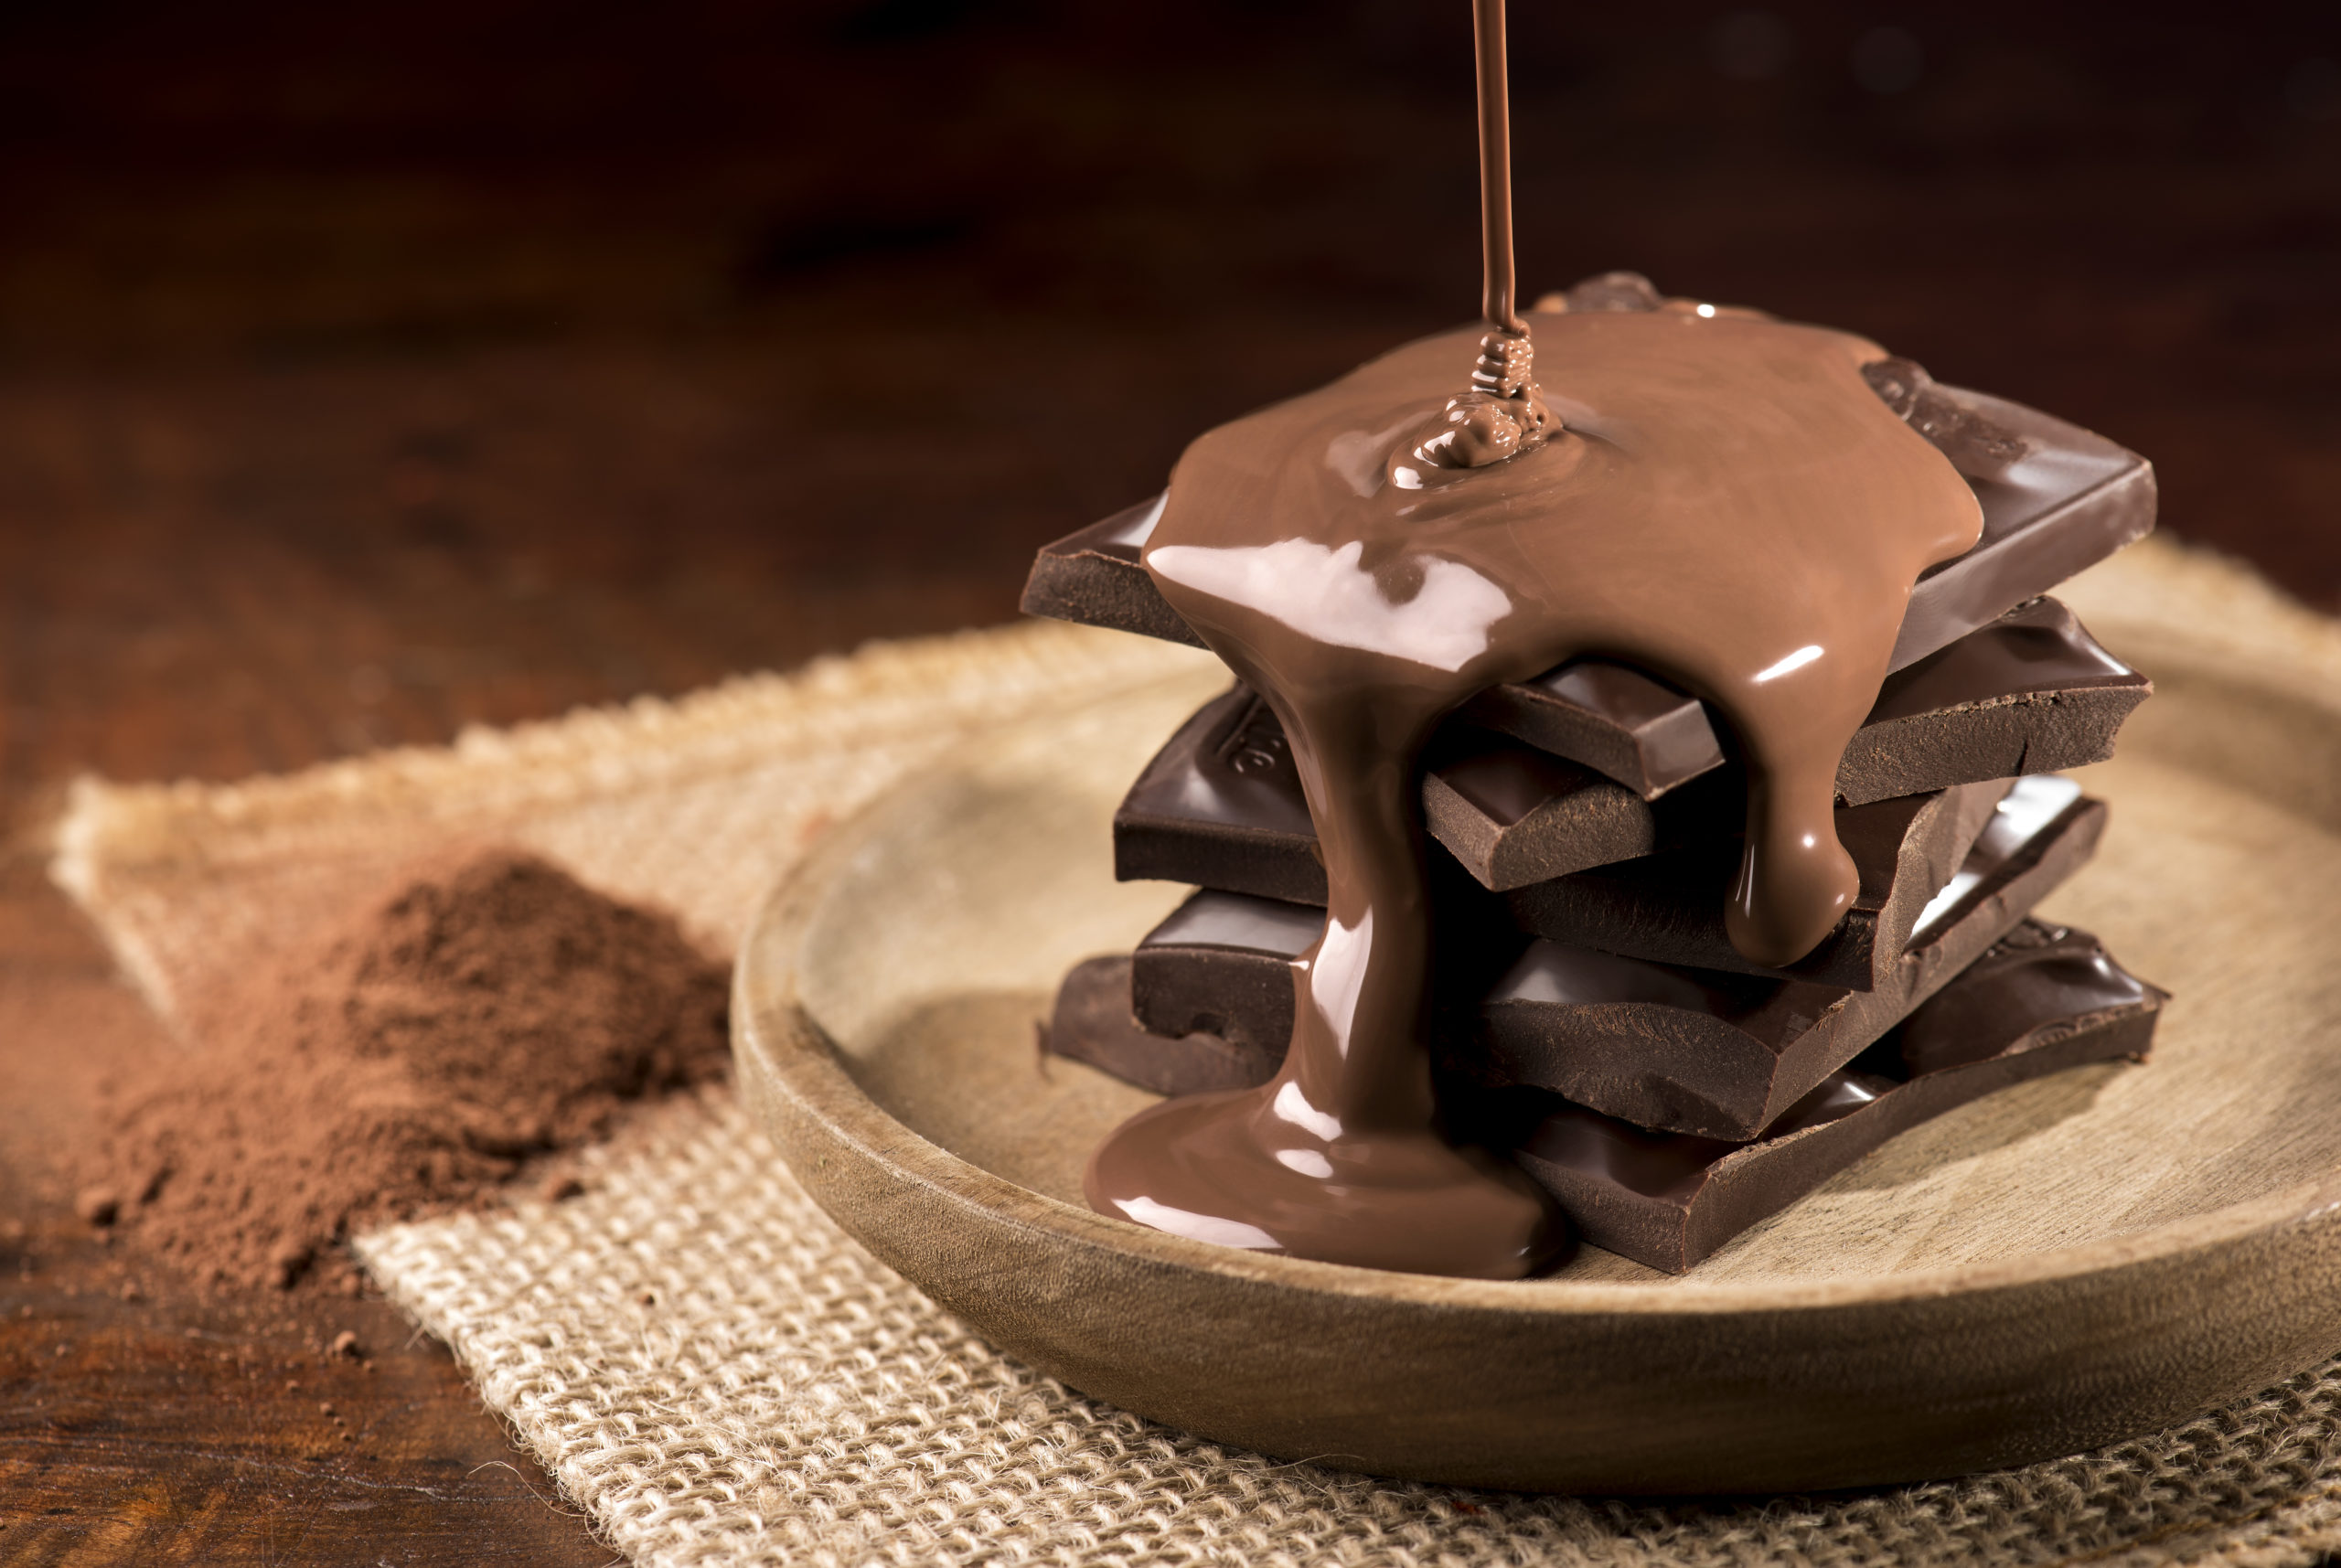 صانعة شوكولاتة برازيلية تستهدف السوق العربي